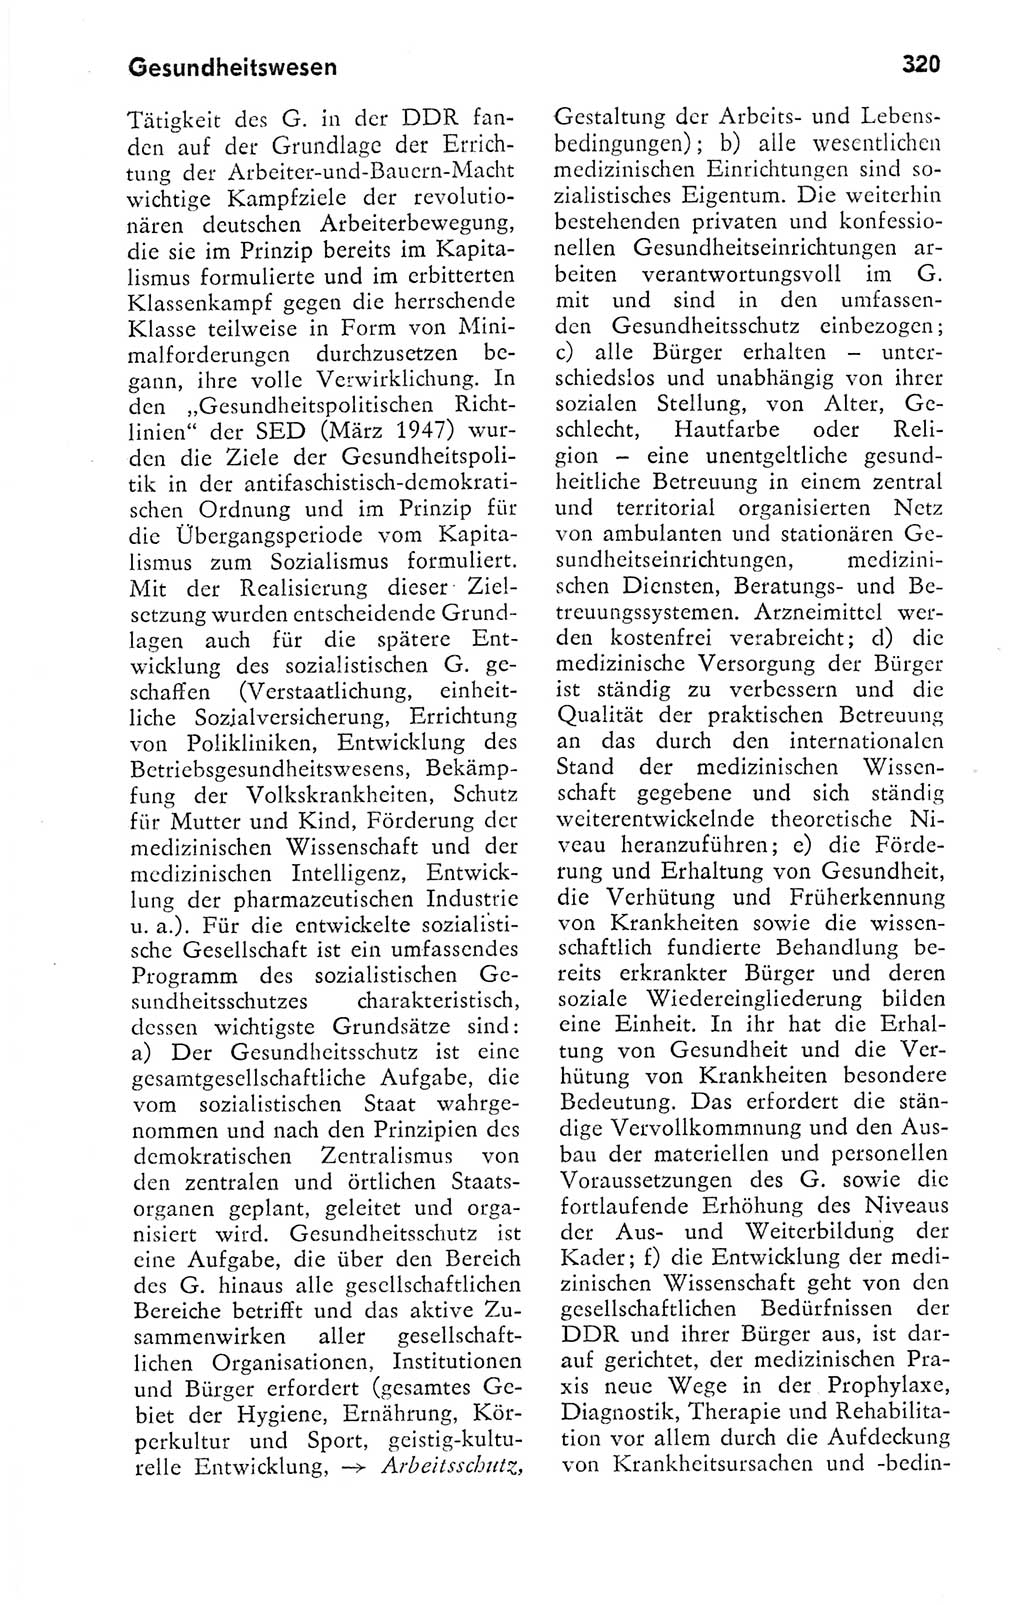 Kleines politisches Wörterbuch [Deutsche Demokratische Republik (DDR)] 1978, Seite 320 (Kl. pol. Wb. DDR 1978, S. 320)